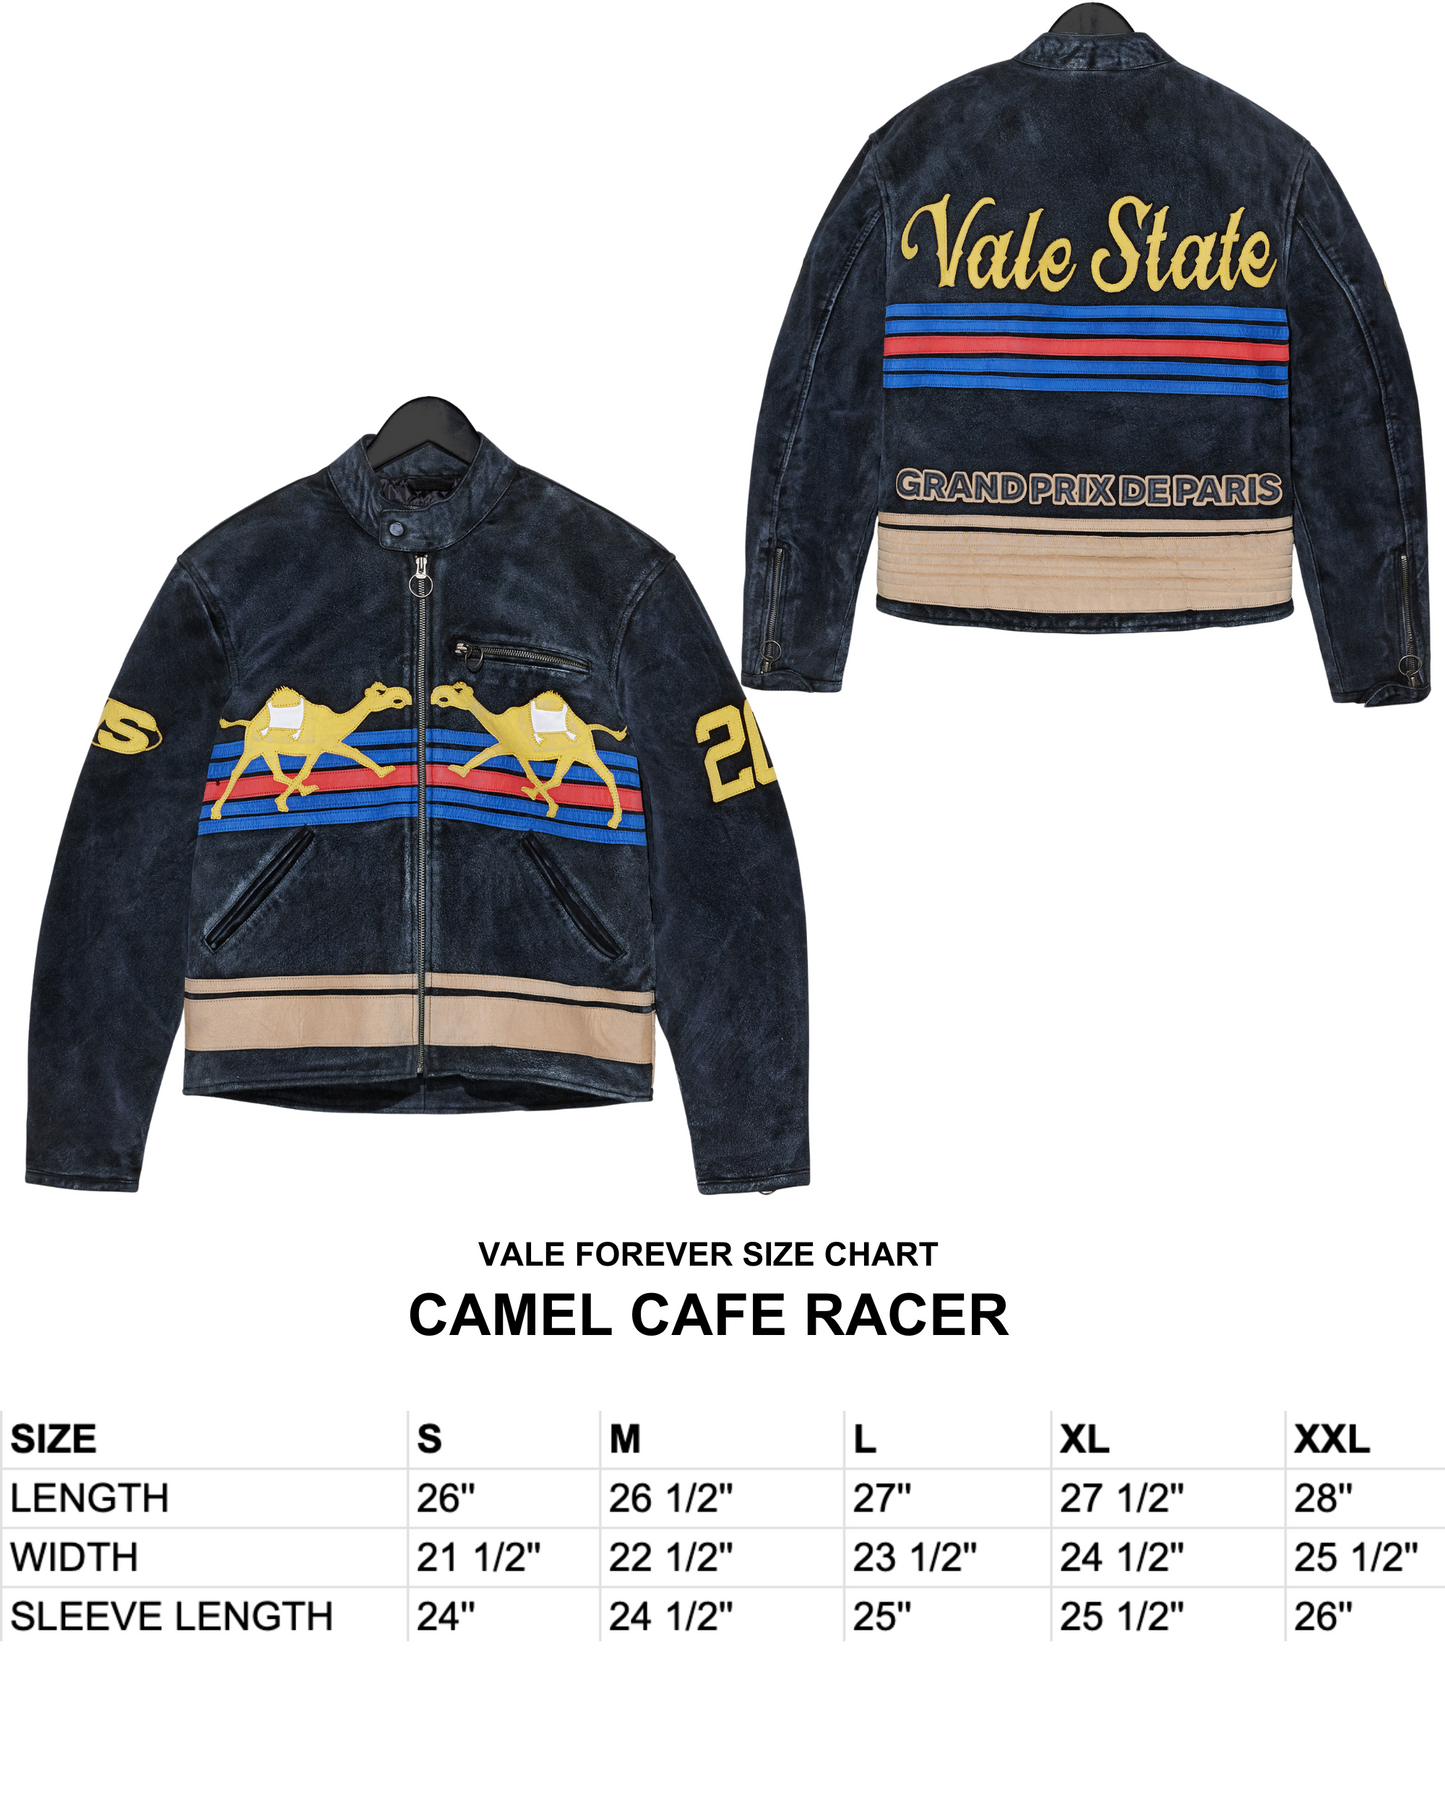 CAMEL CAFE RACER